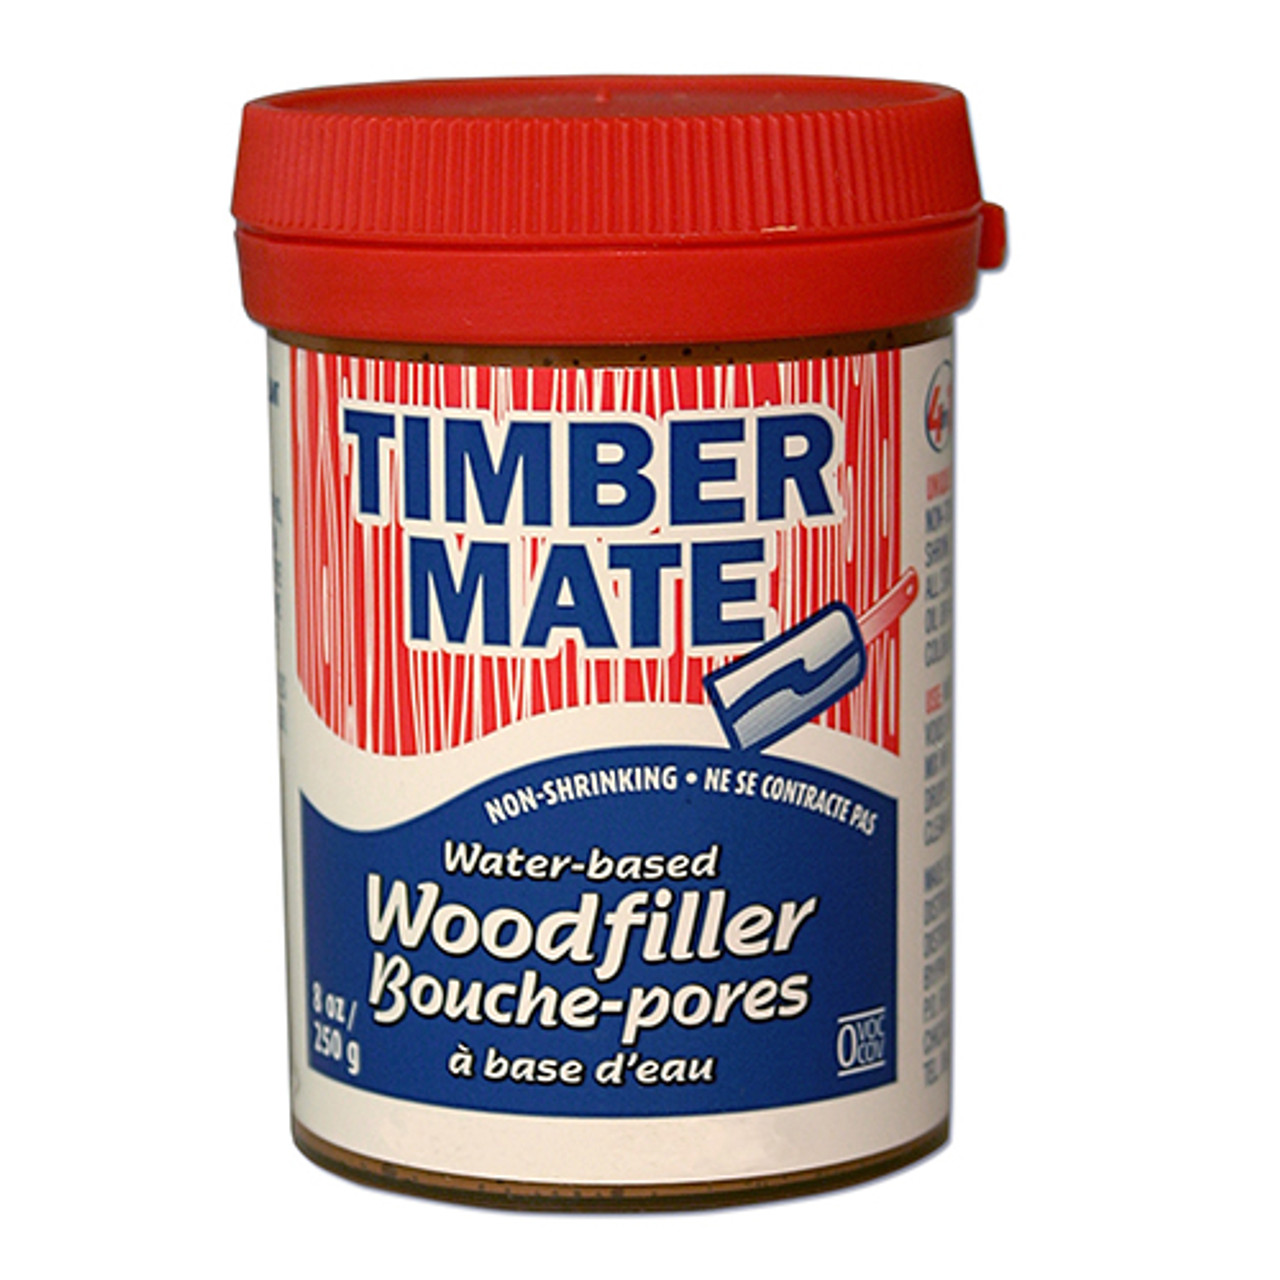 Timbermate Waterbased Wood Filler, White, 8oz